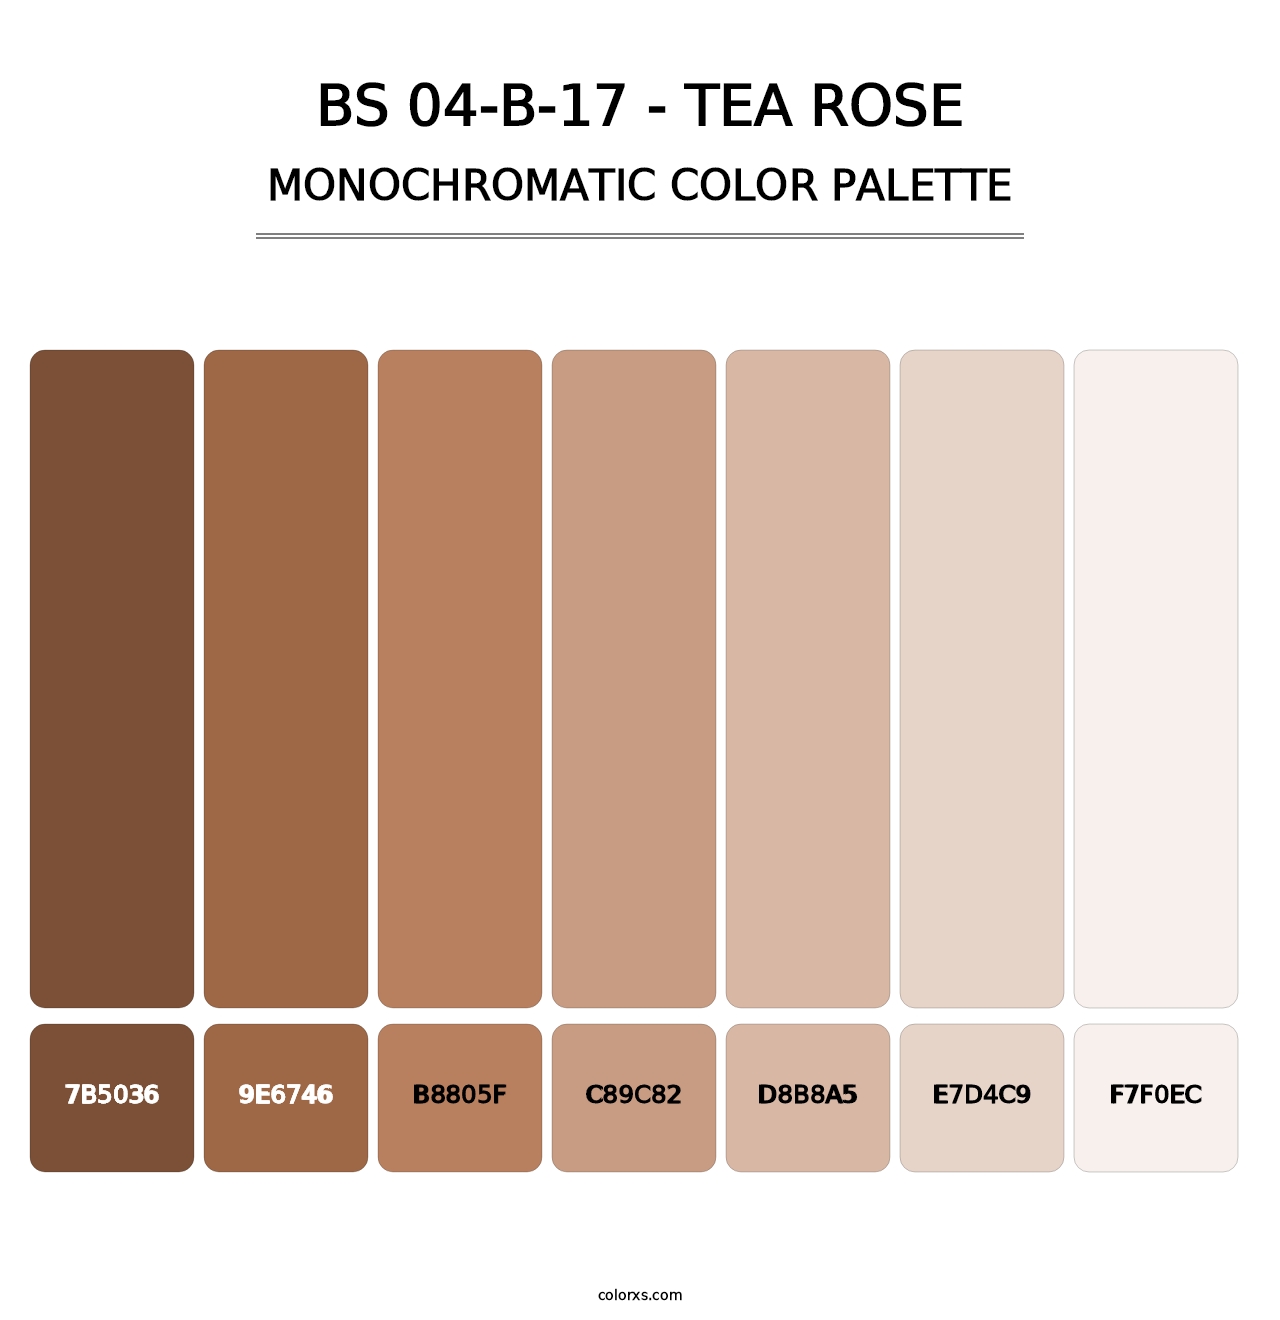 BS 04-B-17 - Tea Rose - Monochromatic Color Palette